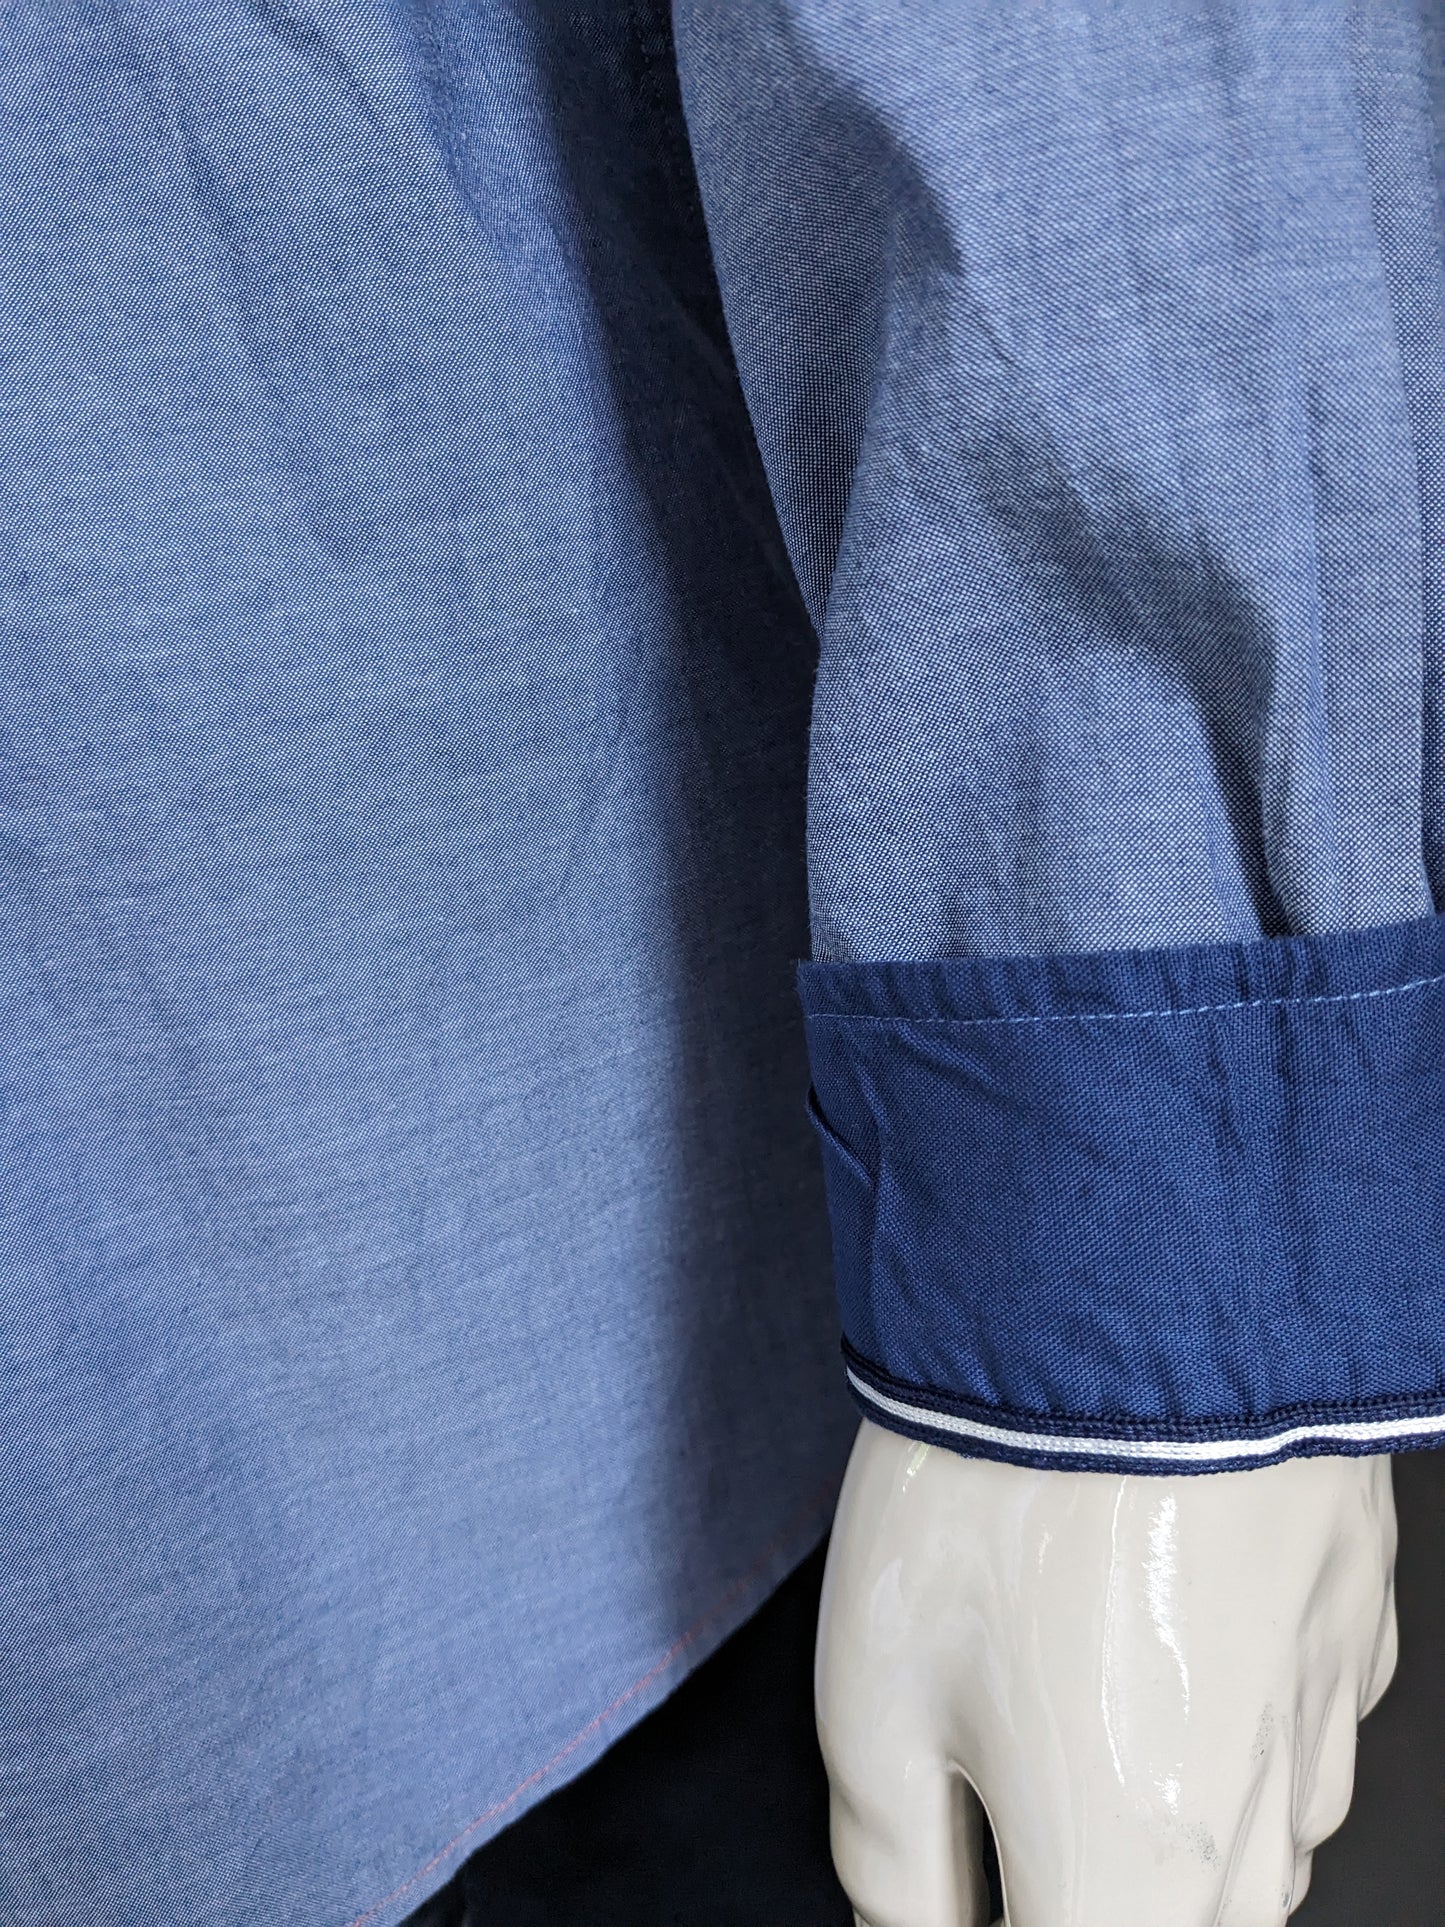 Schneider & Sohn -Shirt. Blau gemischt mit Anwendungen. Größe 2xl / xxl.